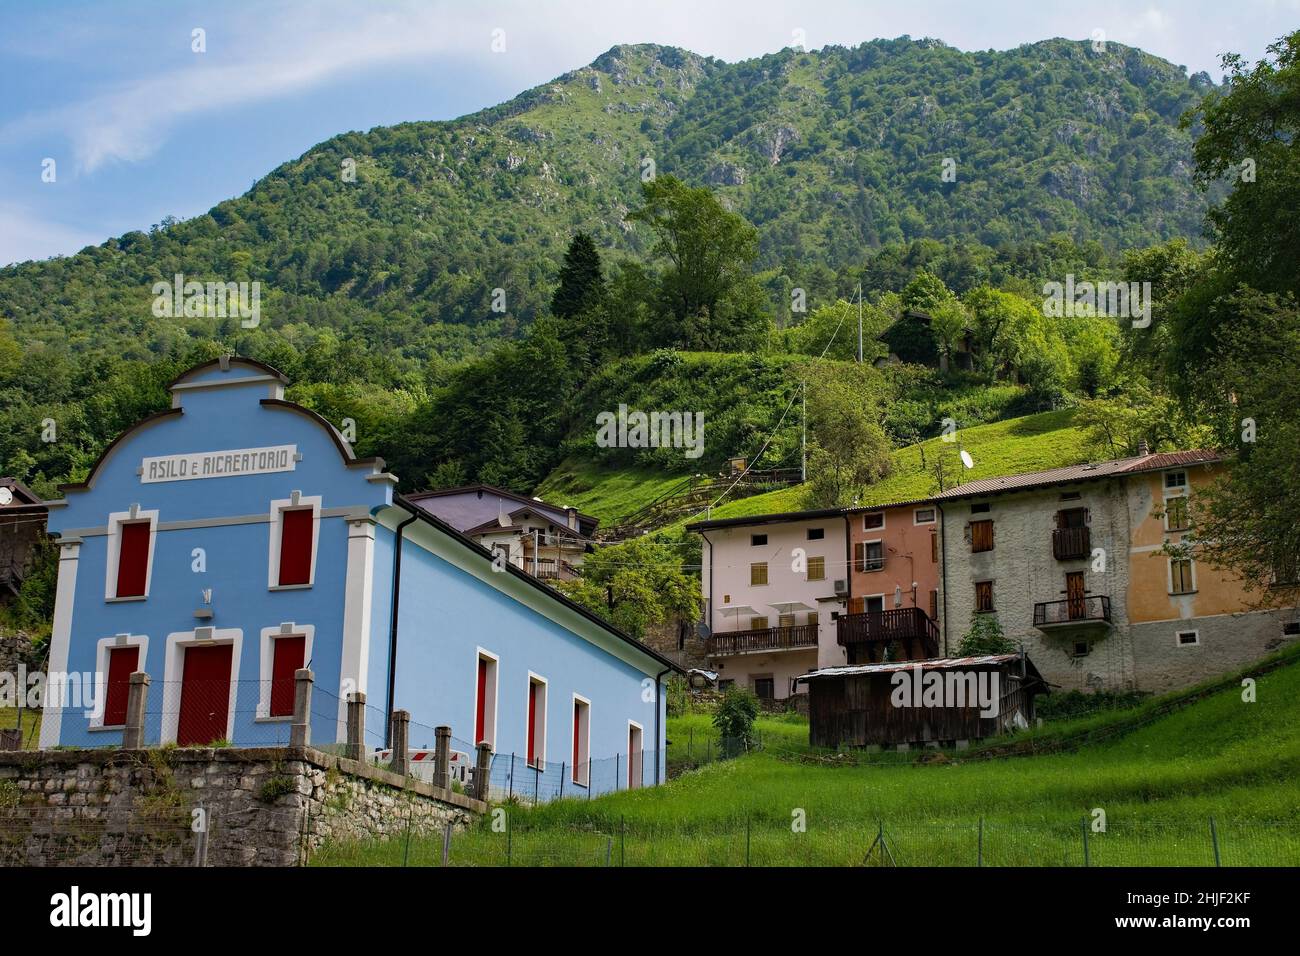 Le village de Dorpolla dans la municipalité de Moggio Udinese d'Udine, Italie.Le texte sur le bâtiment de premier plan indique qu'il s'agit d'une école maternelle Banque D'Images